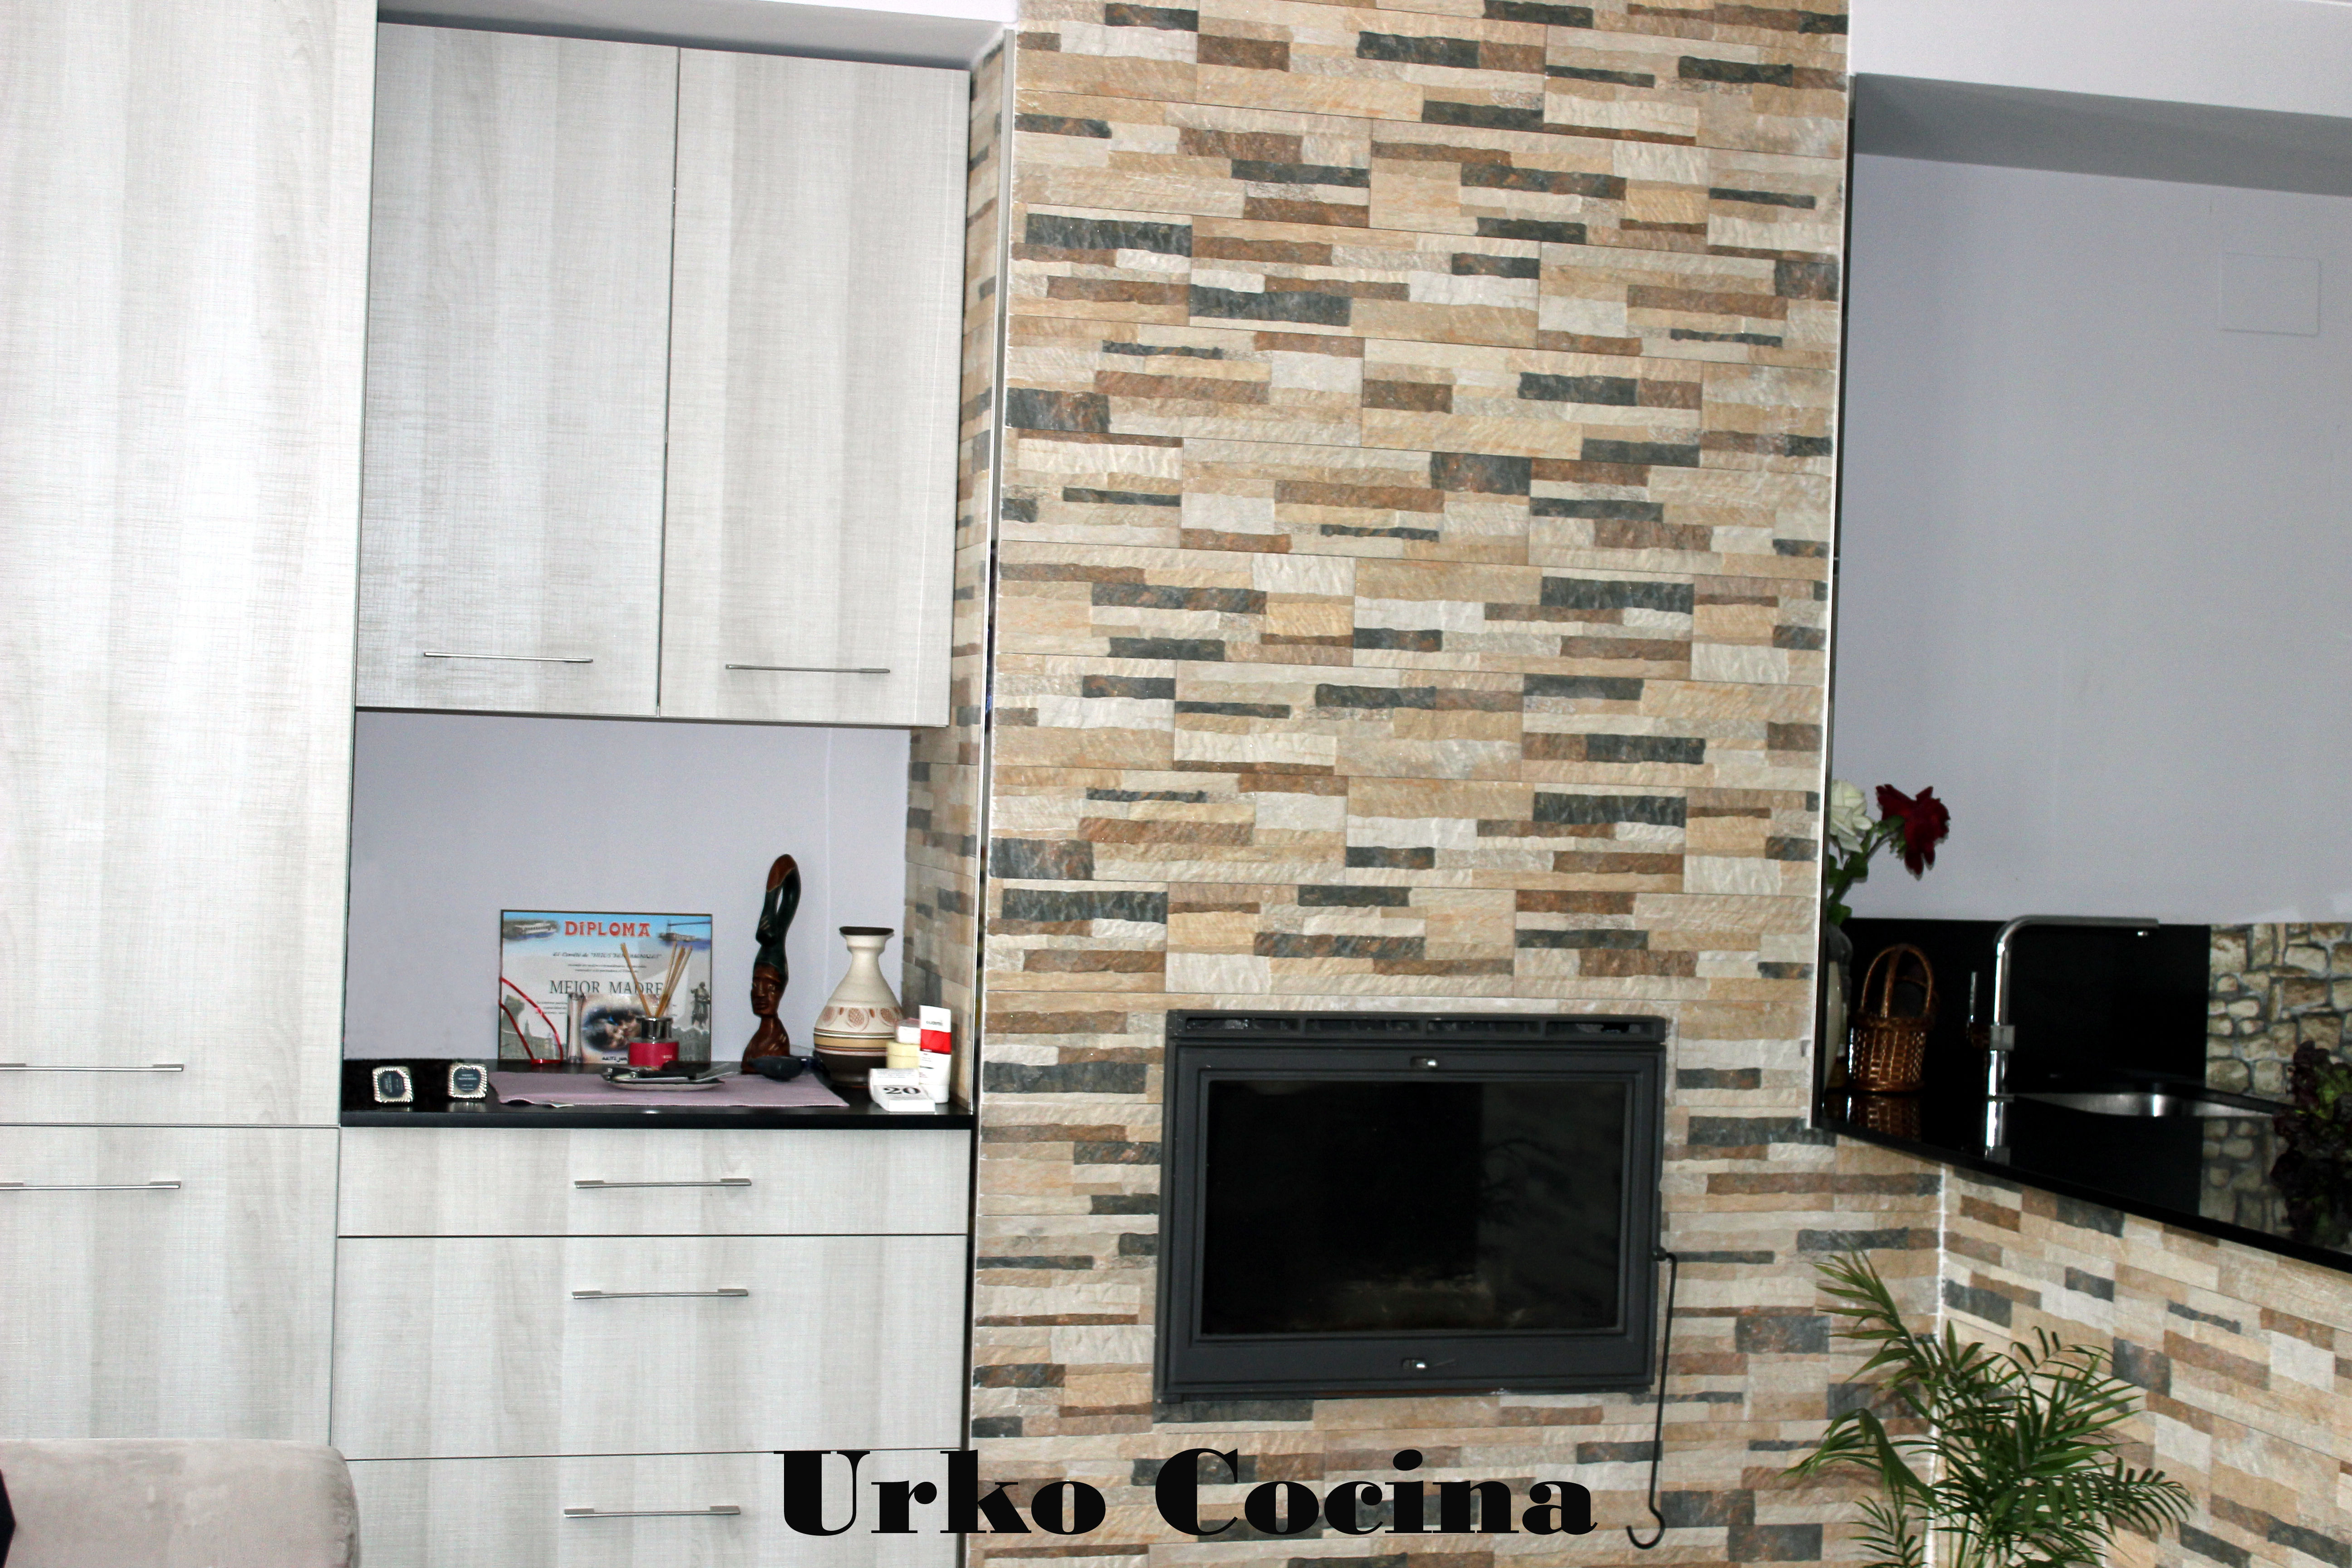 Foto 21 de Muebles de baño y cocina en Bilbao | Urko Cocina